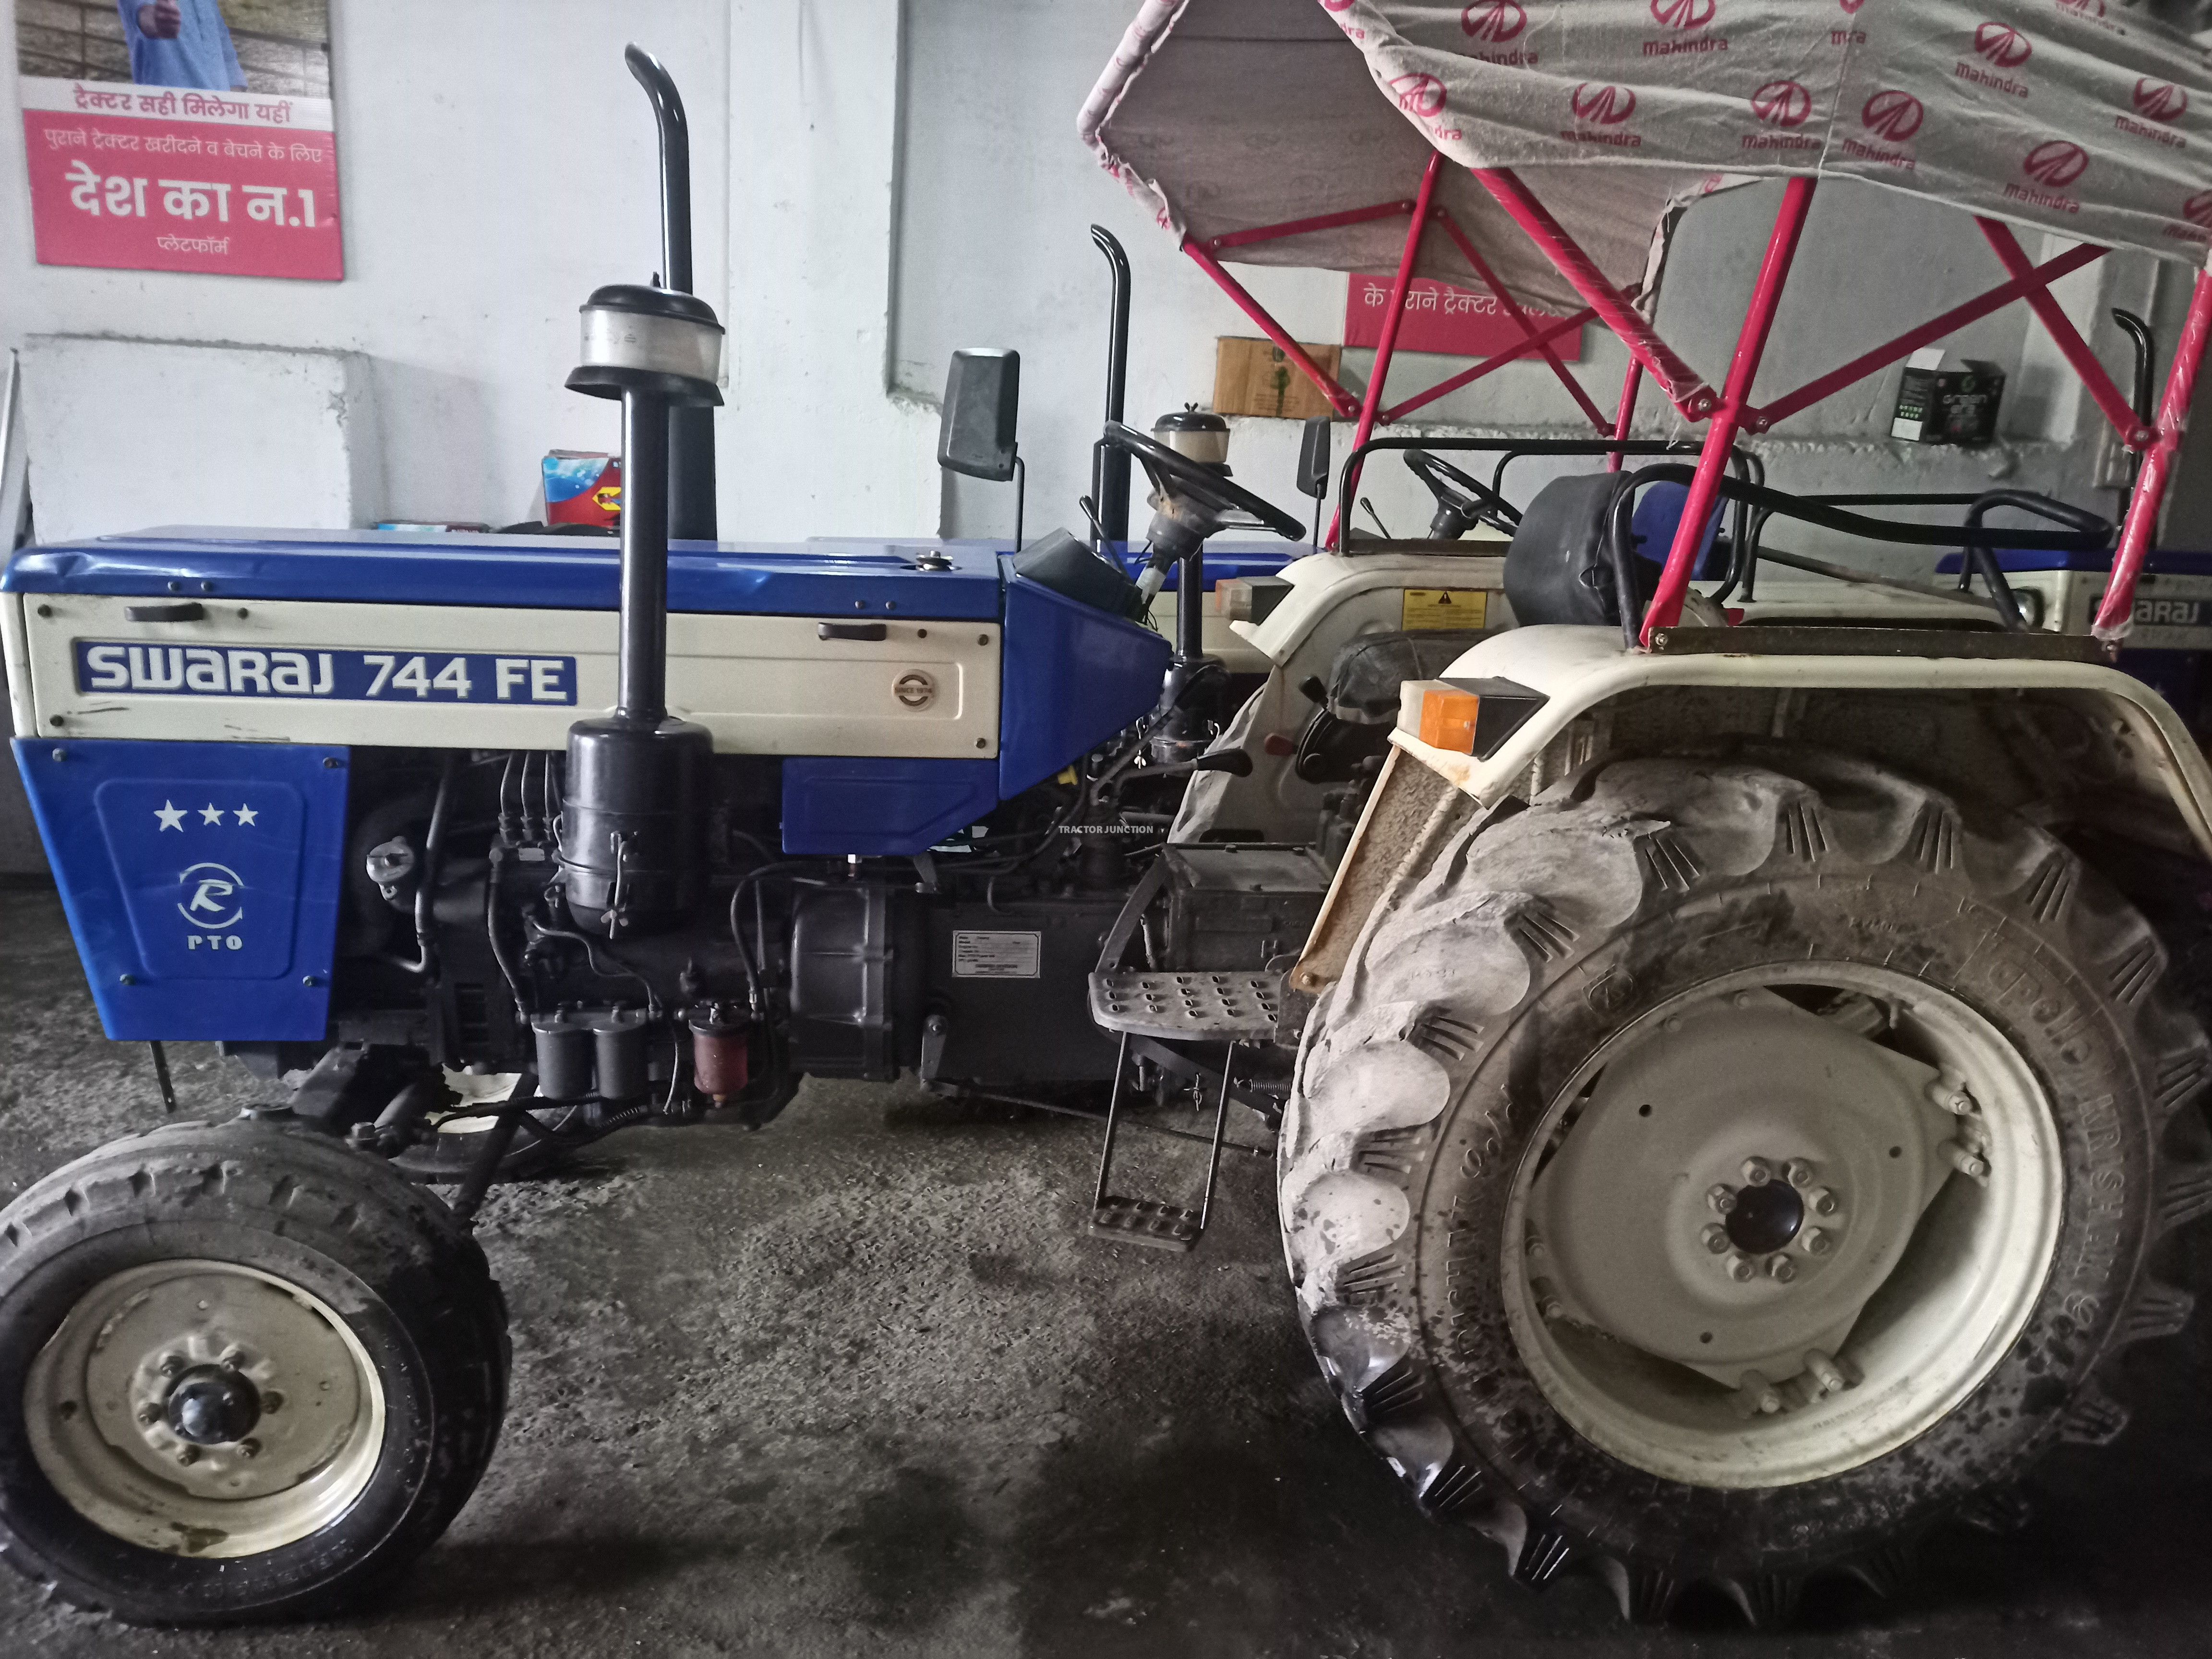 Used Swaraj 963 FE Tractor, 2018 Model (TJN67298) for Sale in